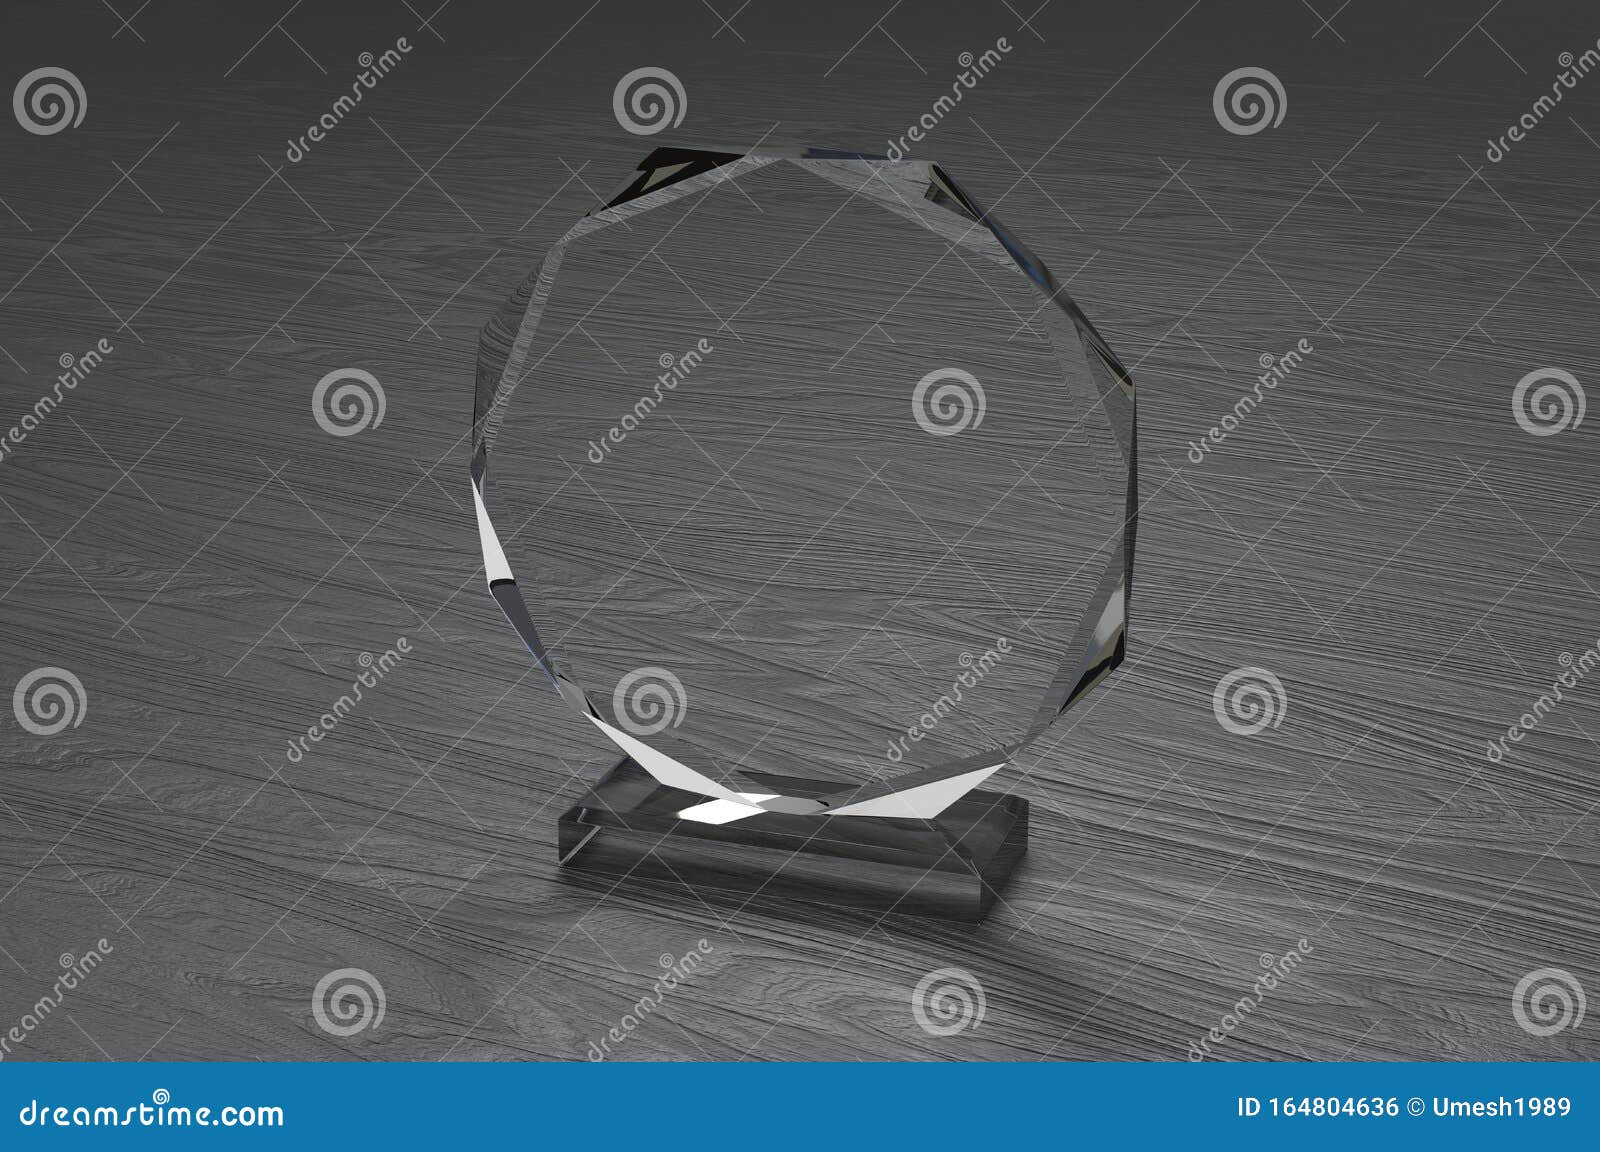 Download Blank Transparent Crystal Trophy For Mock Up. 3d Render ...